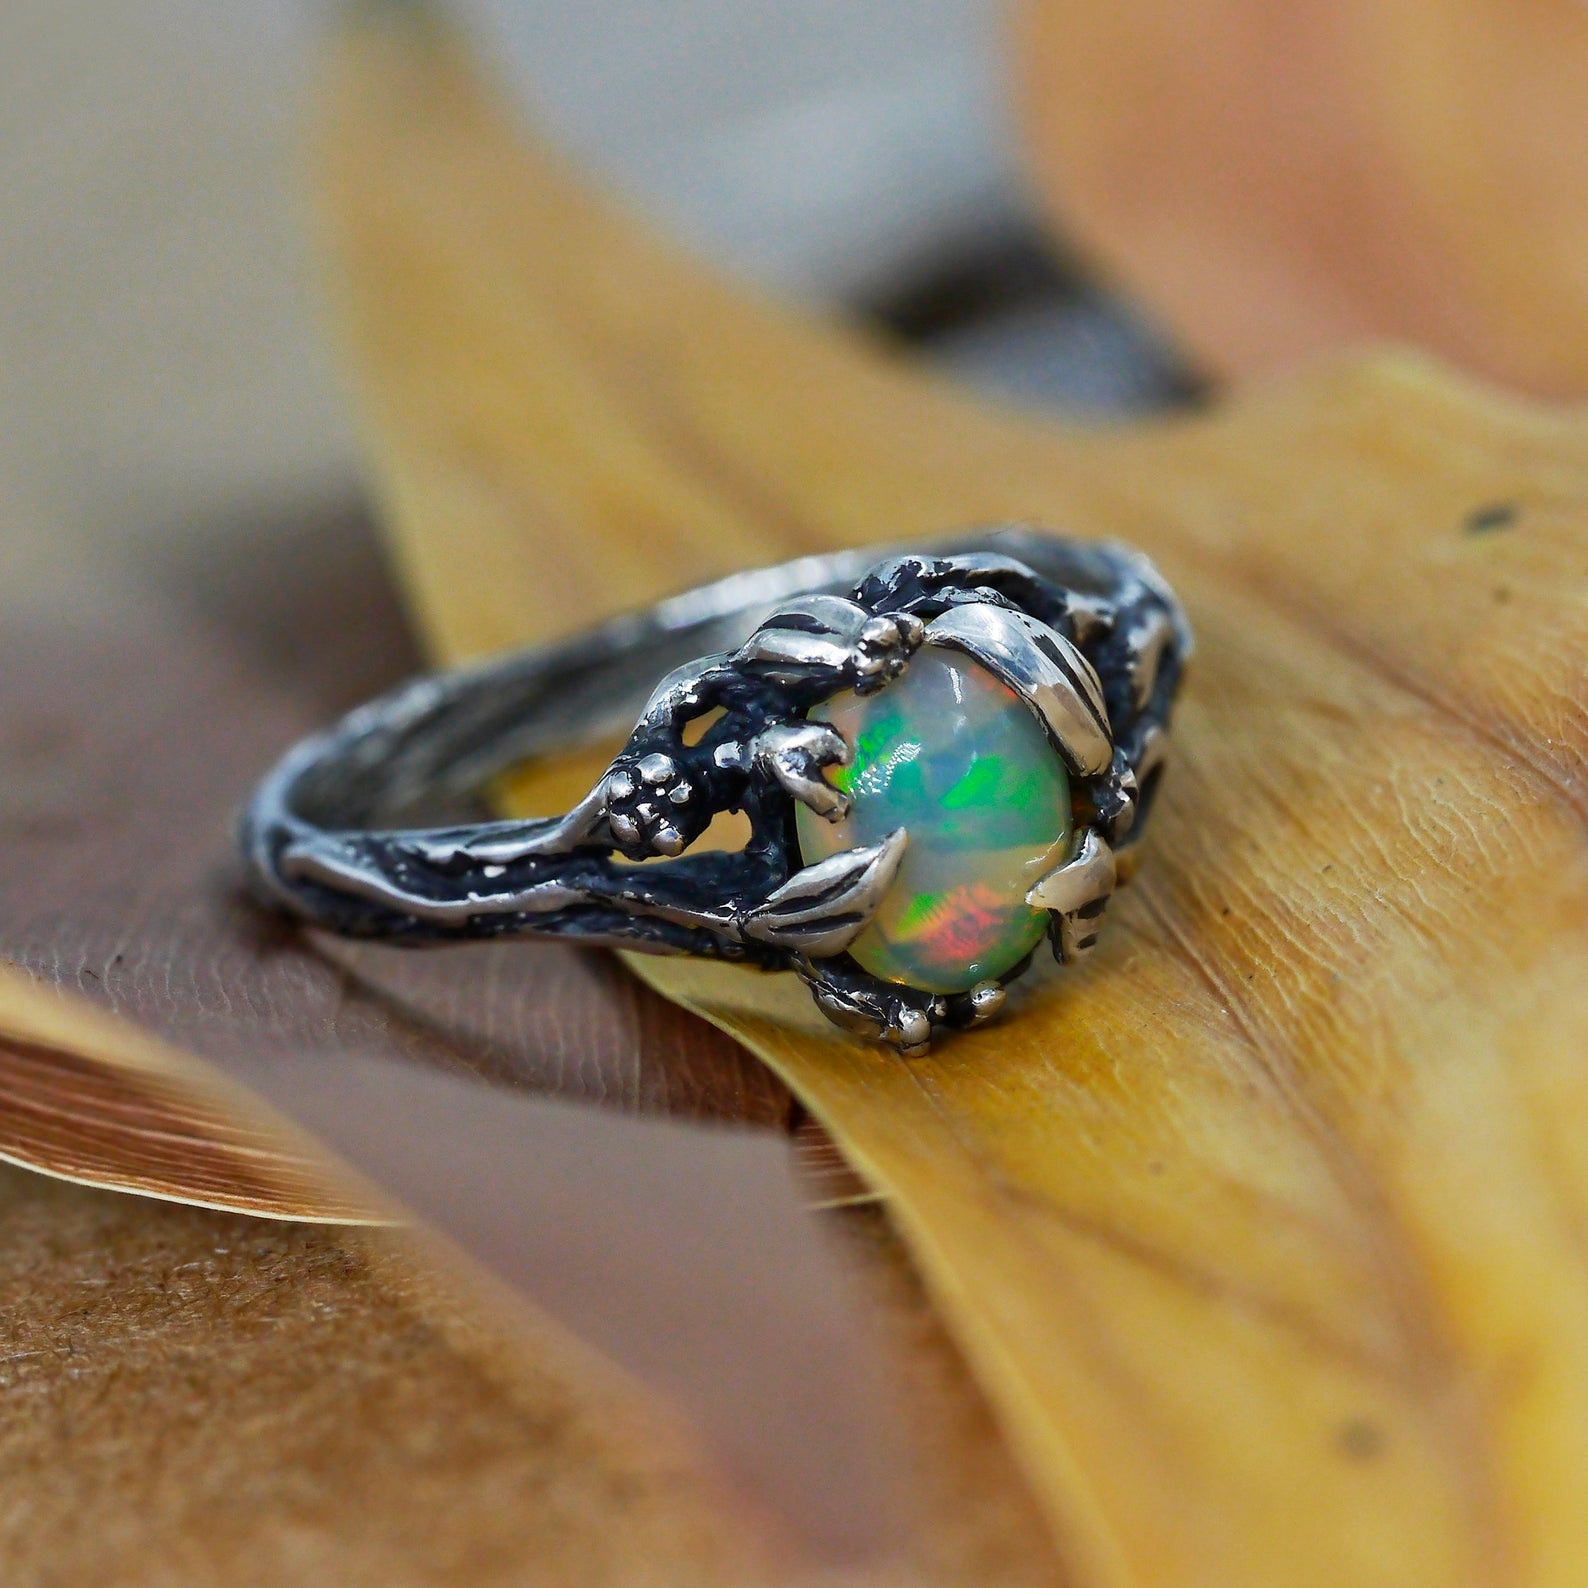 Is an Opal Engagement Ring a good idea? | Jason Ree – Jason Ree Design